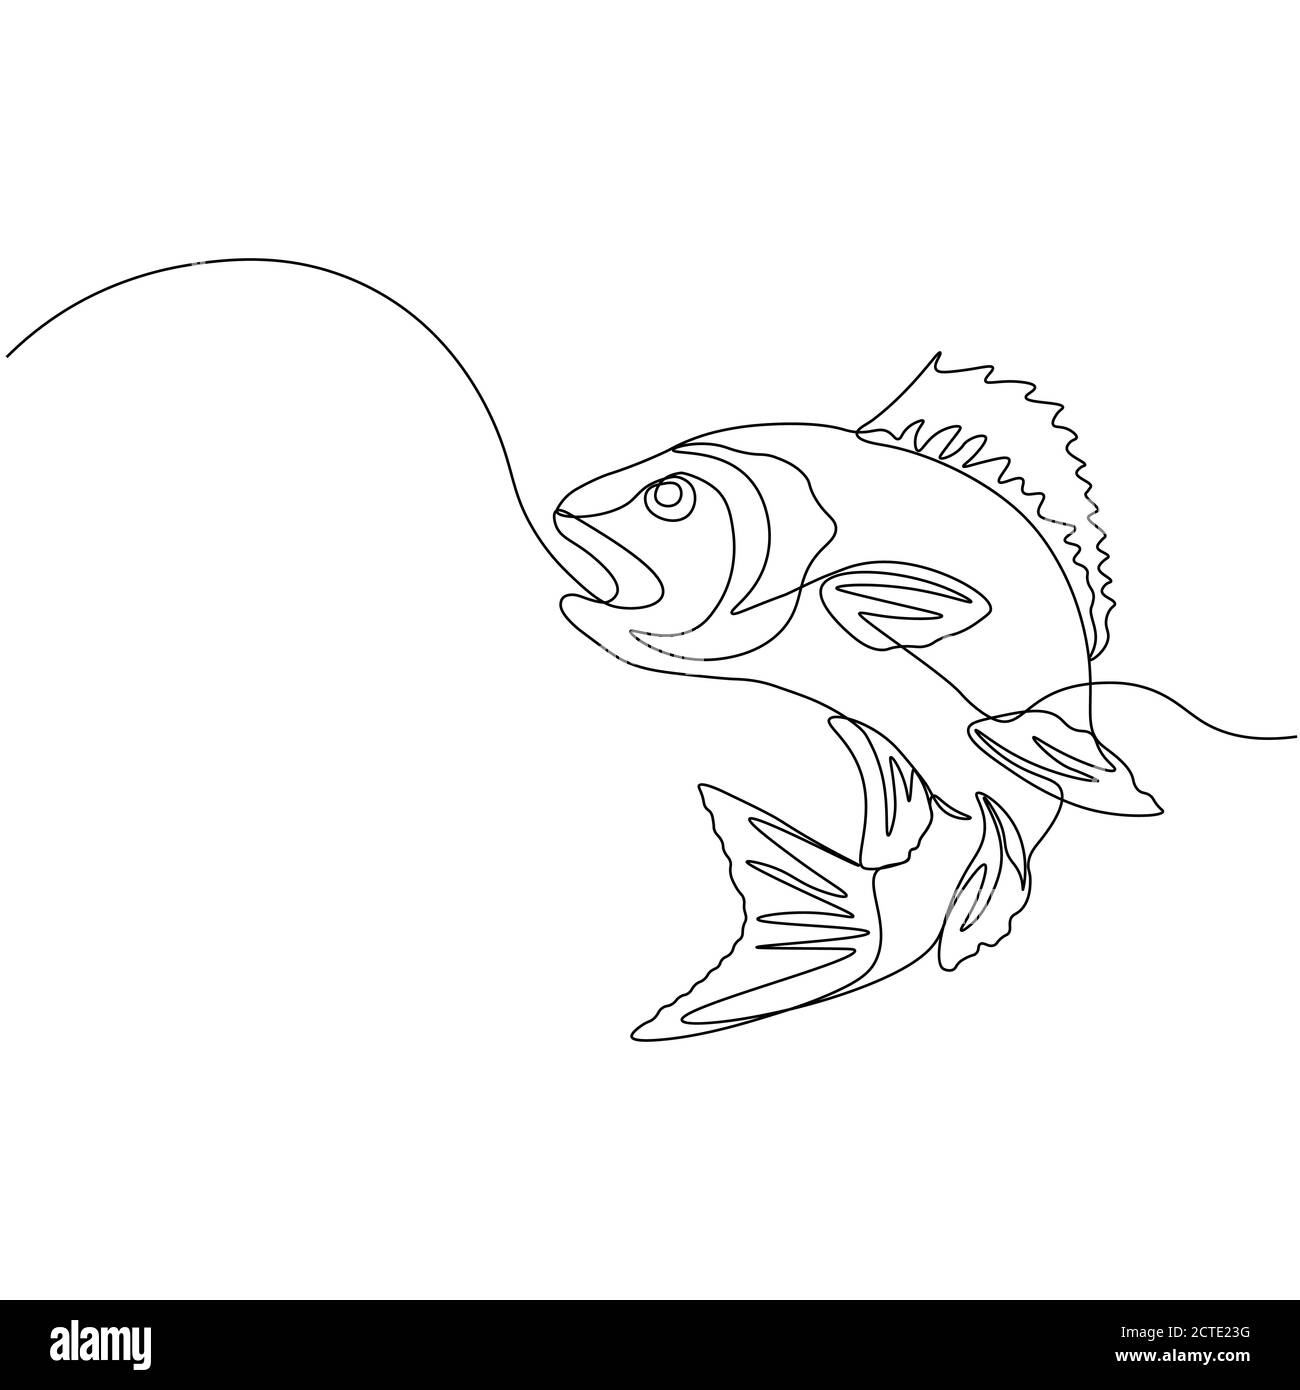 Barsch. Eine Linie Fisch-Design Silhouette. Logo-Design. Handgezeichnete Vektorgrafik im Minimalismus-Stil... Stock Vektor